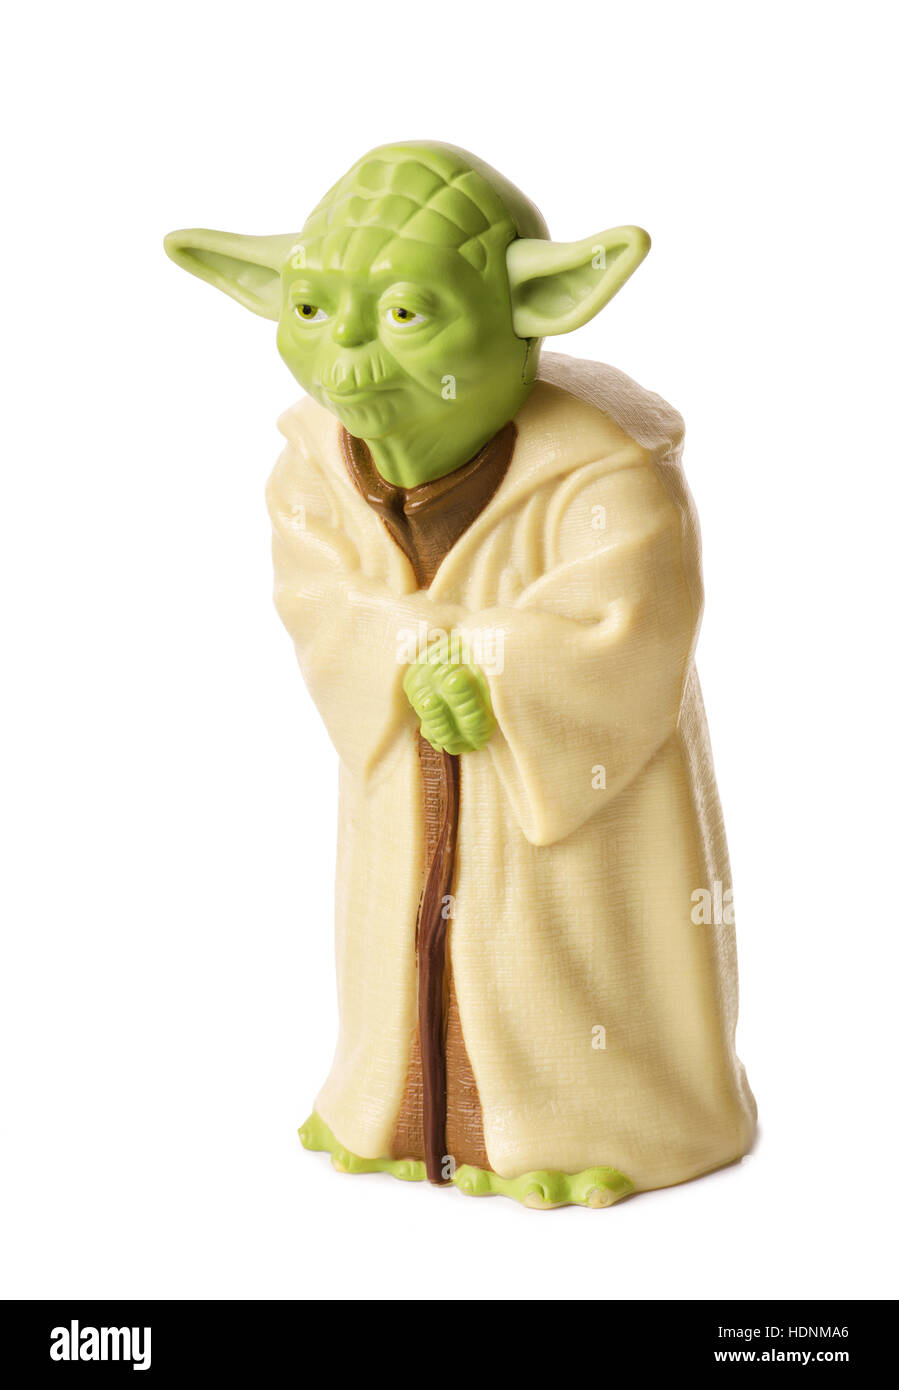 RUSSIA, Samara - Ottobre 06, 2016: plastica figurina di maestro Yoda di Star Wars cinema Foto Stock